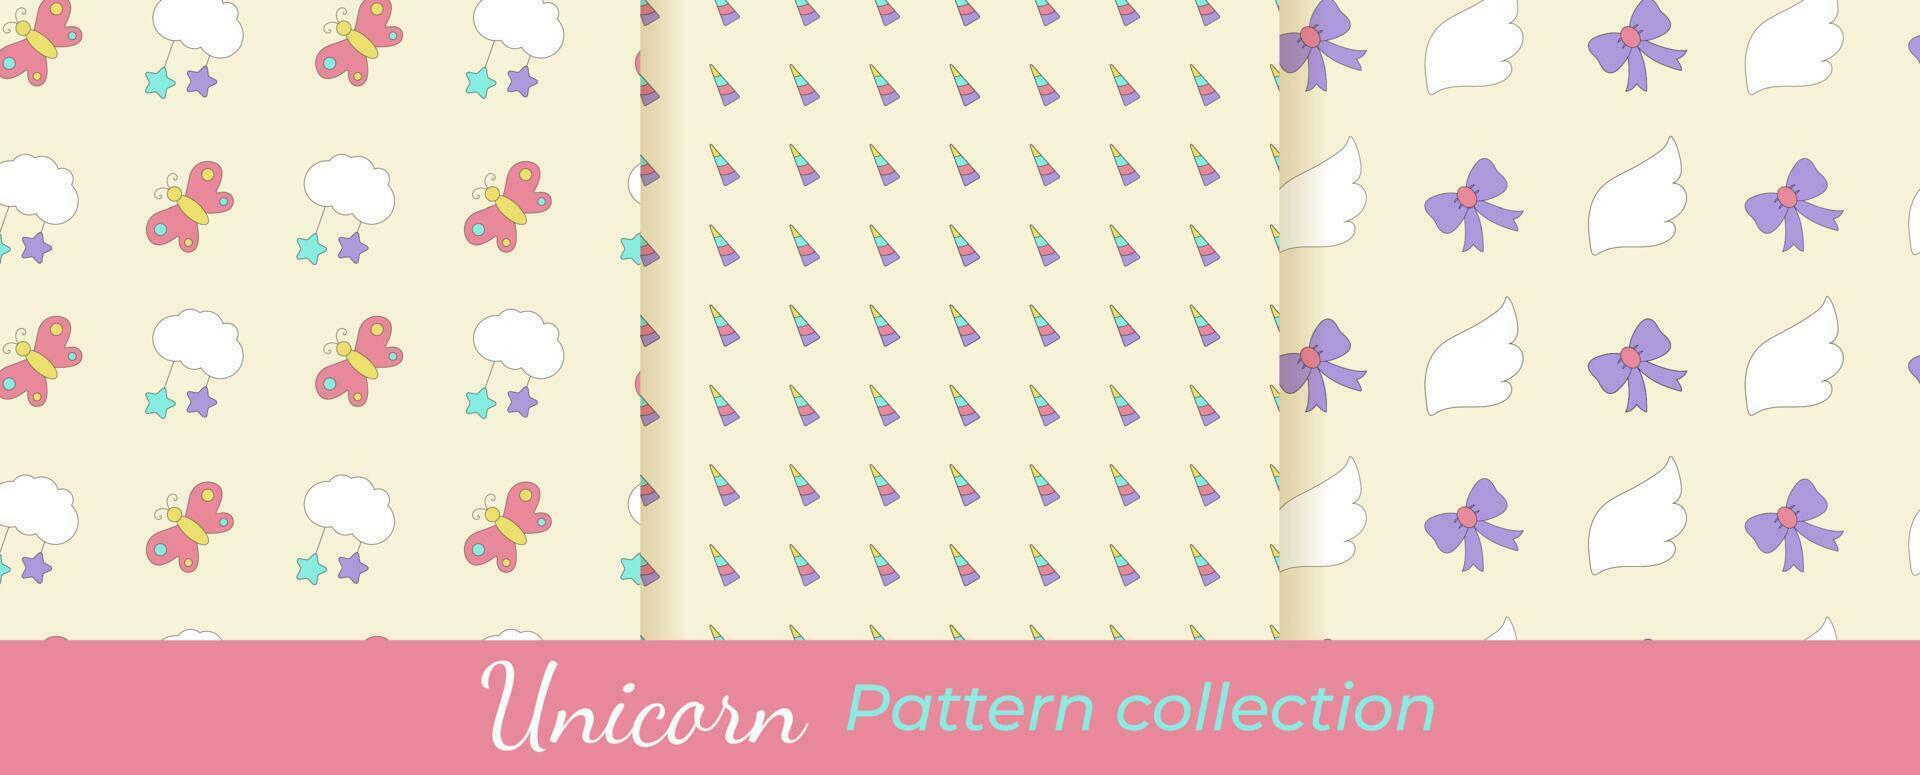 colección de unicornio patrones. mágico vector patrones colocar. sin costura patrones con nubes, cuernos, mariposas, alas, arcos, estrellas.